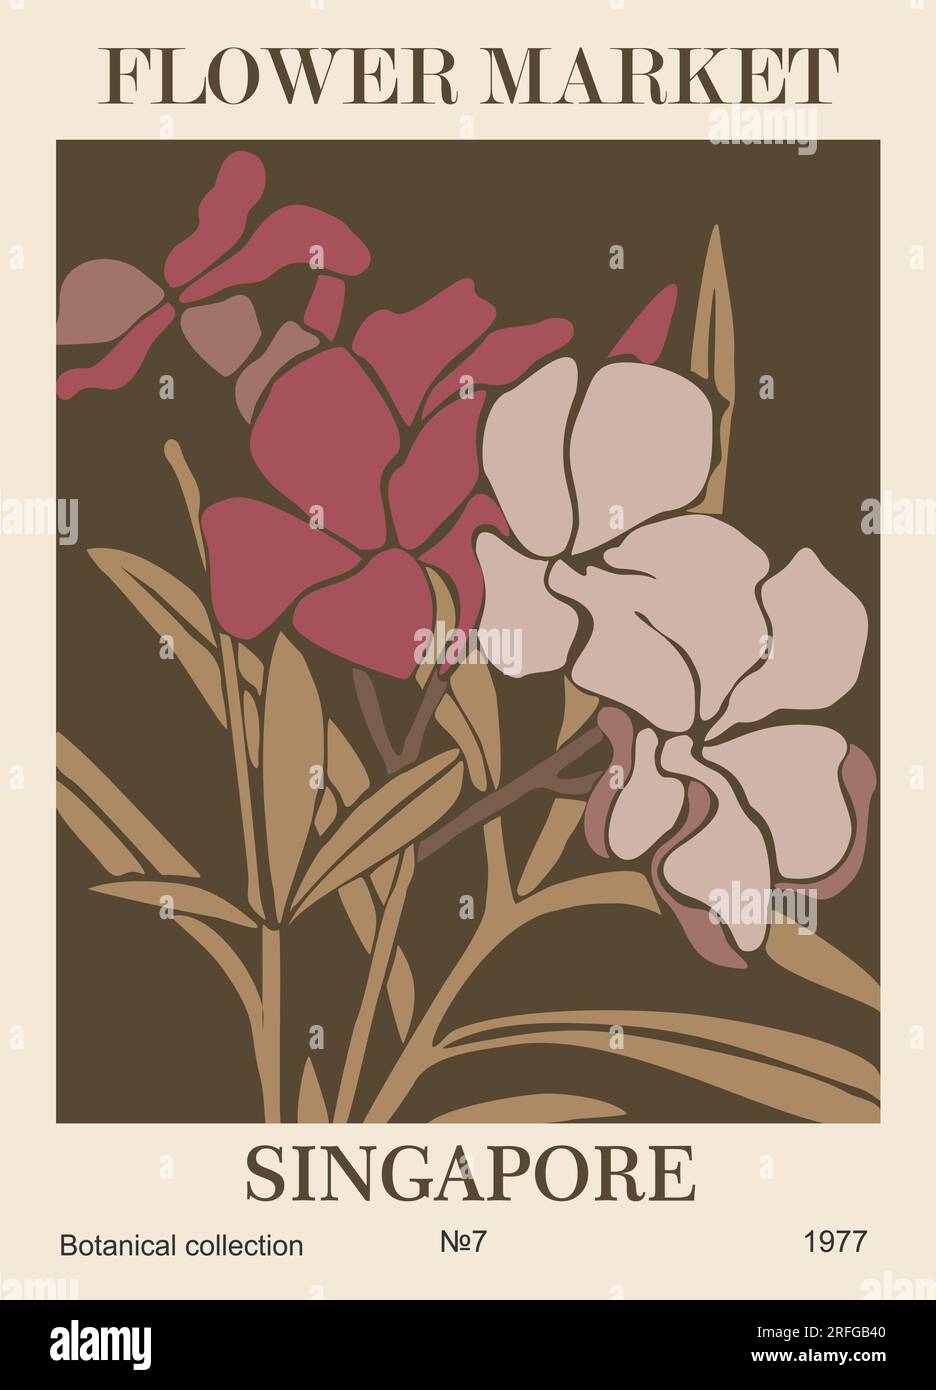 Affiche d'art rétro abstraite du marché aux fleurs Singapour. Illustration de Vecteur